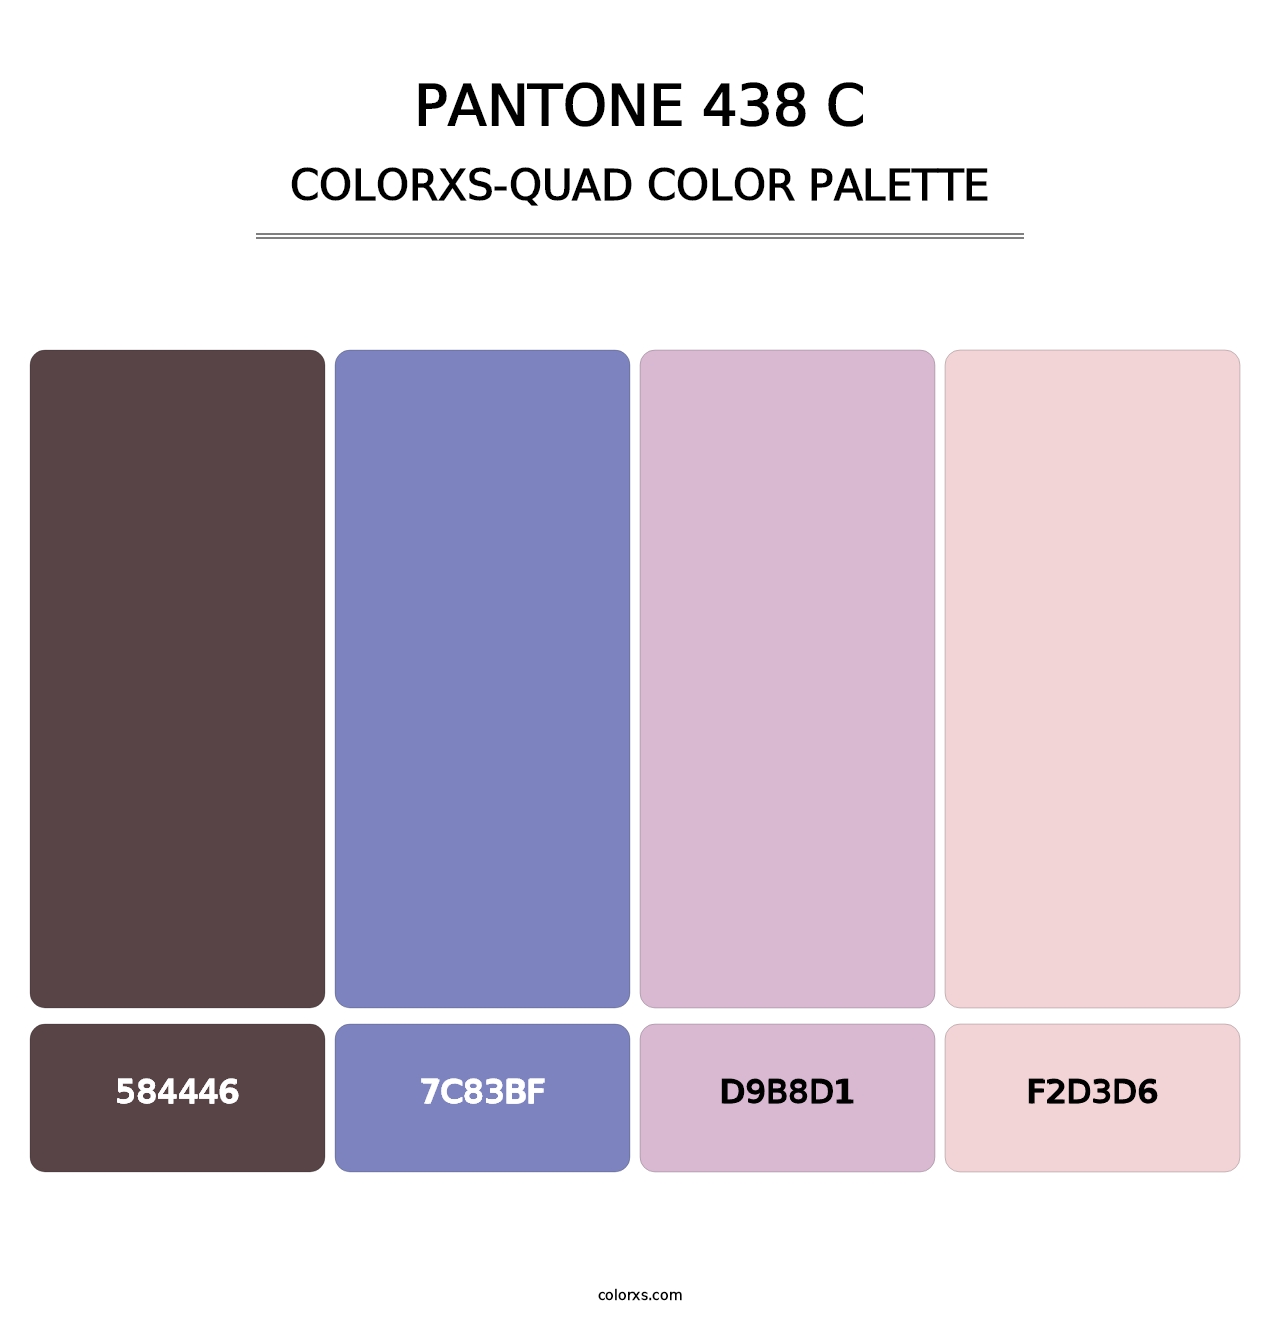 PANTONE 438 C - Colorxs Quad Palette